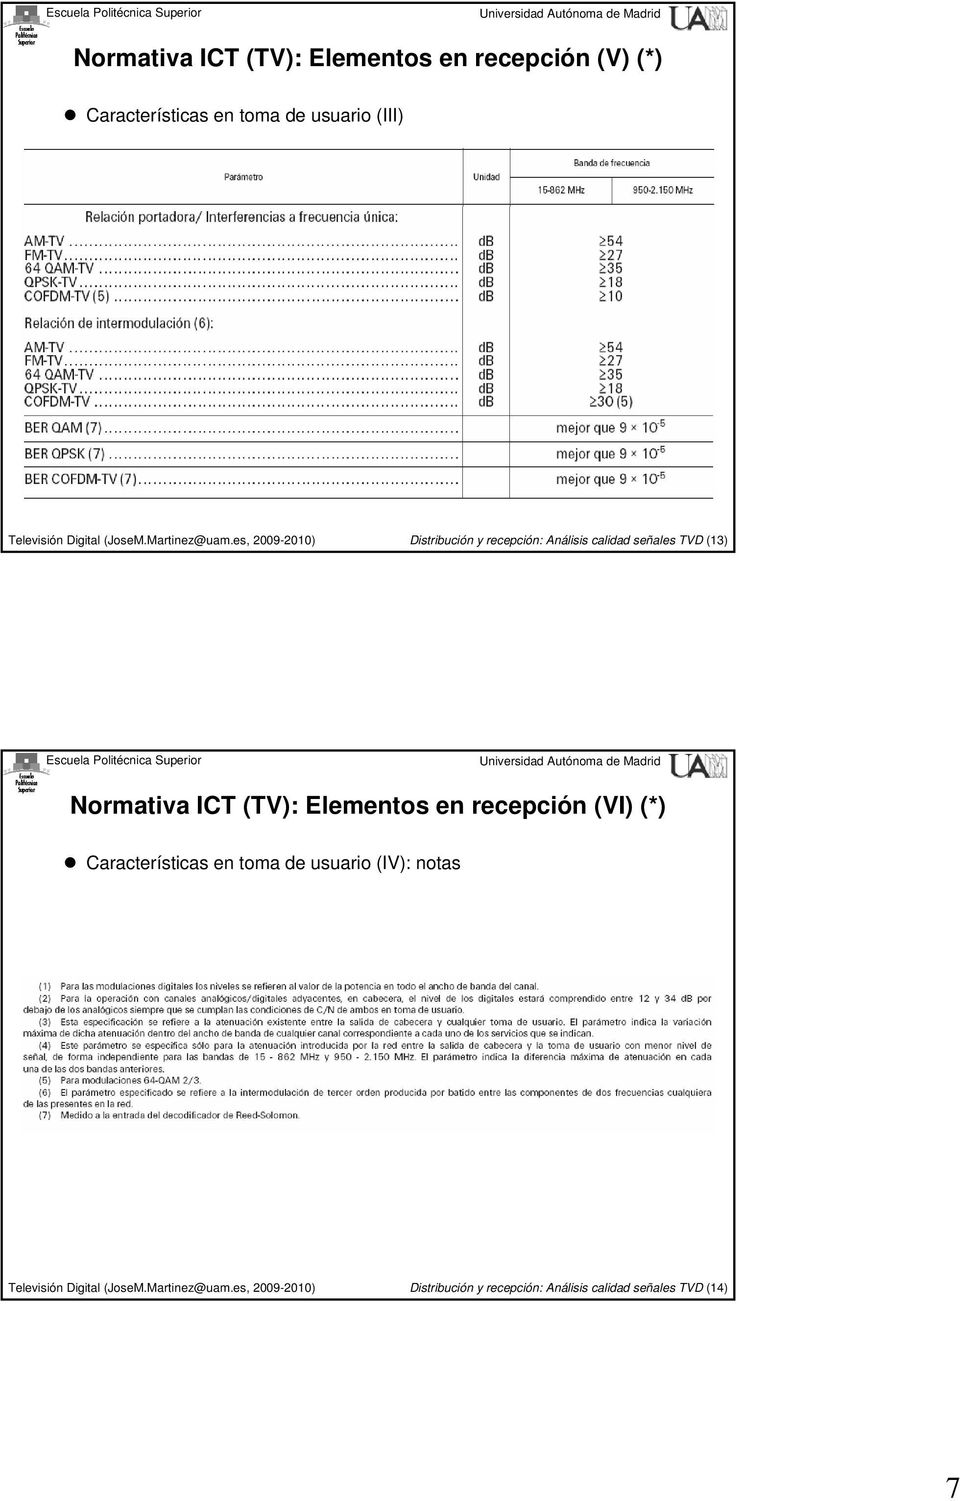 Normativa ICT (TV): Elementos en recepción (VI) (*) Características en toma